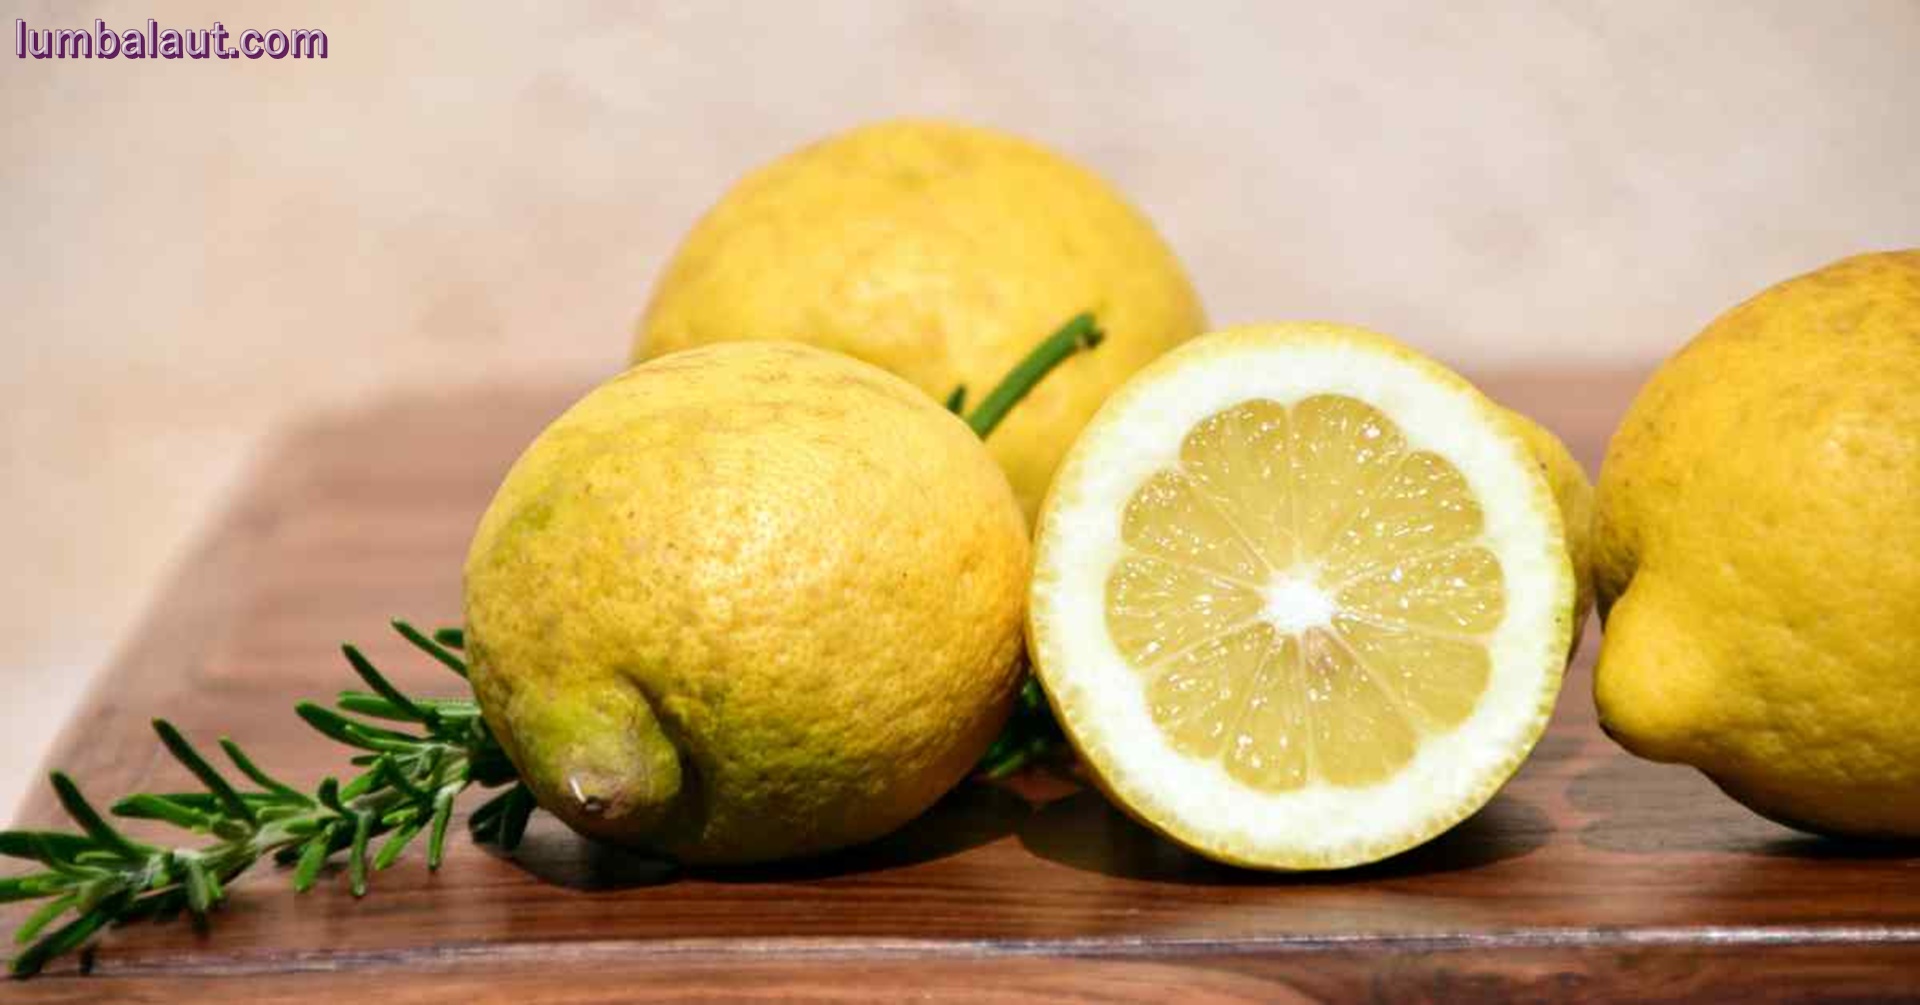 Manfaat Lemon untuk Kesehatan dan Kecantikan